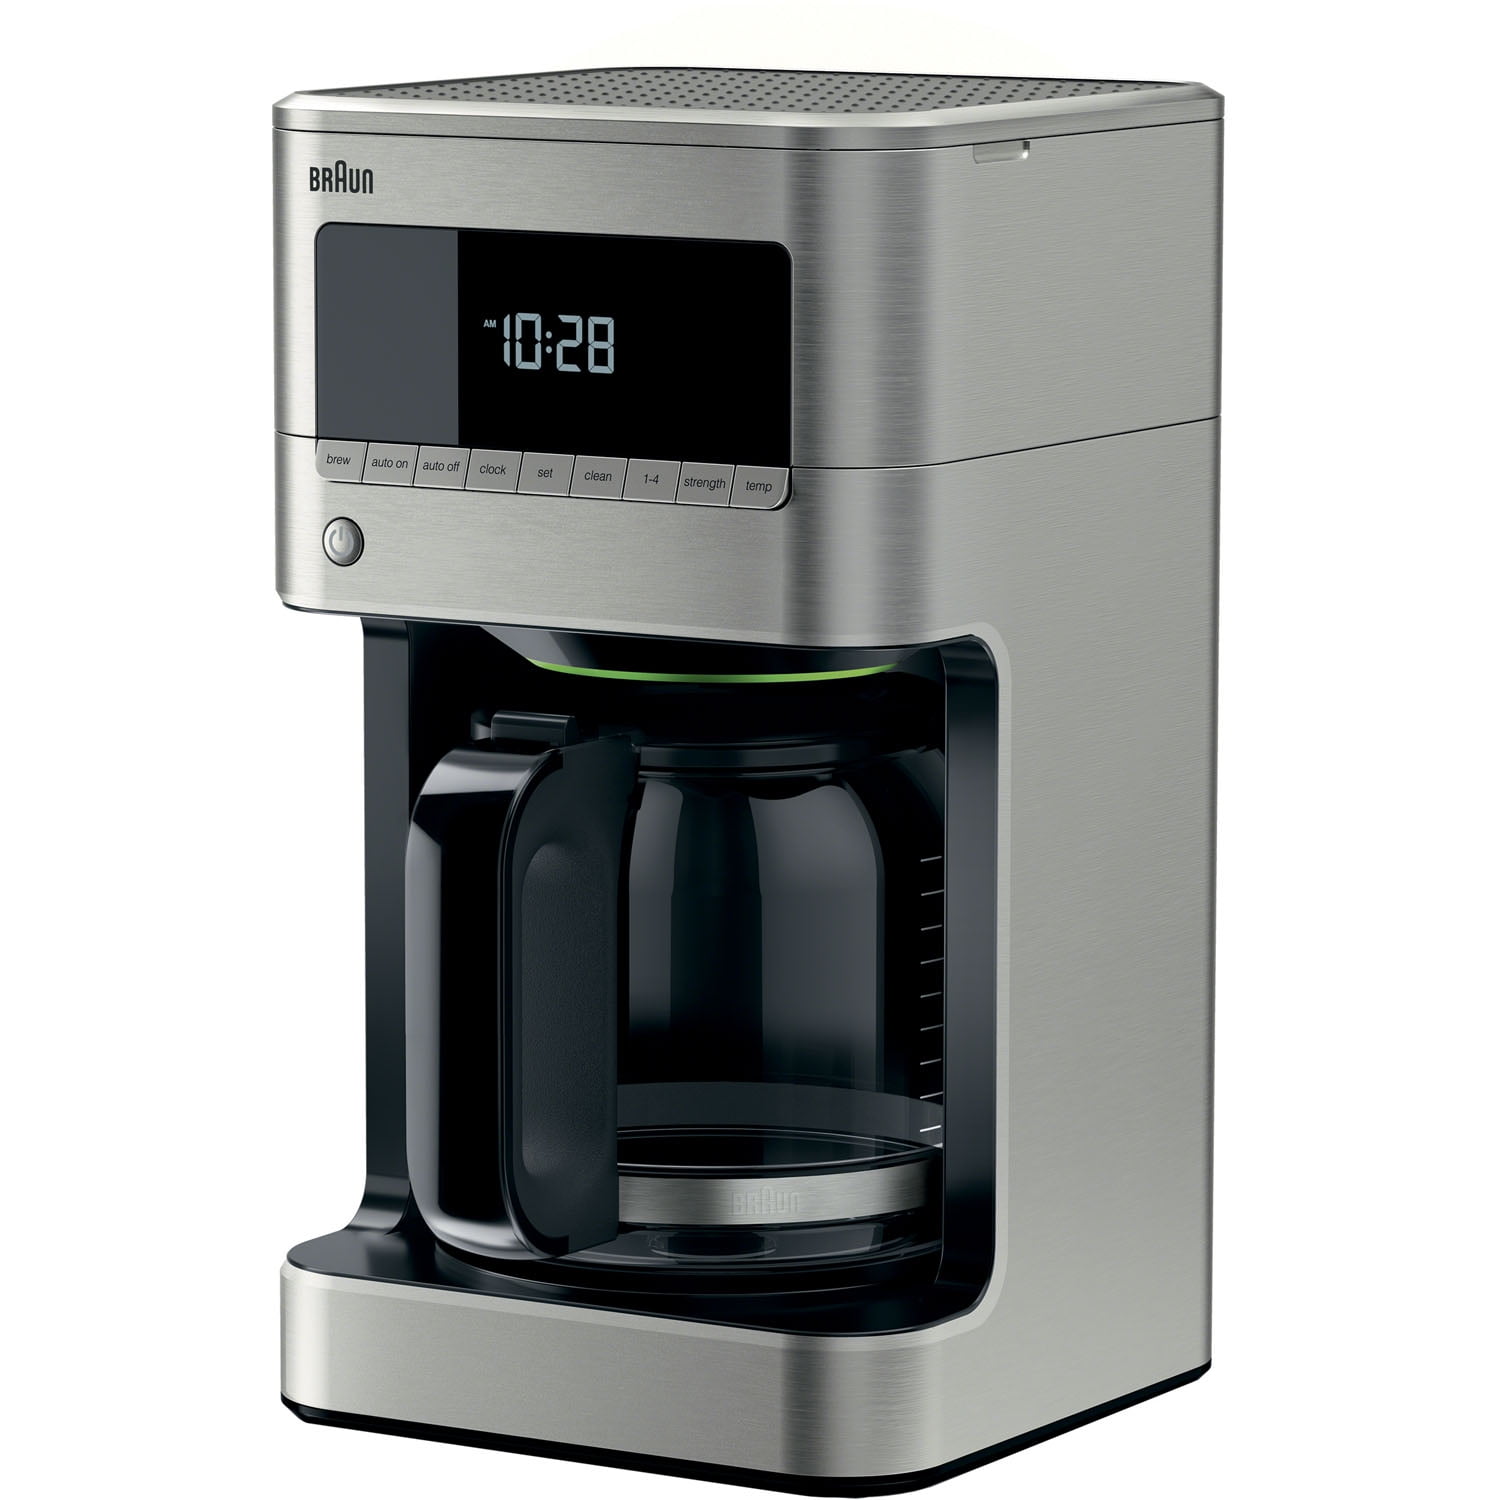 Braun Brew Sense Drip Coffee Maker (KF7000BK), Black